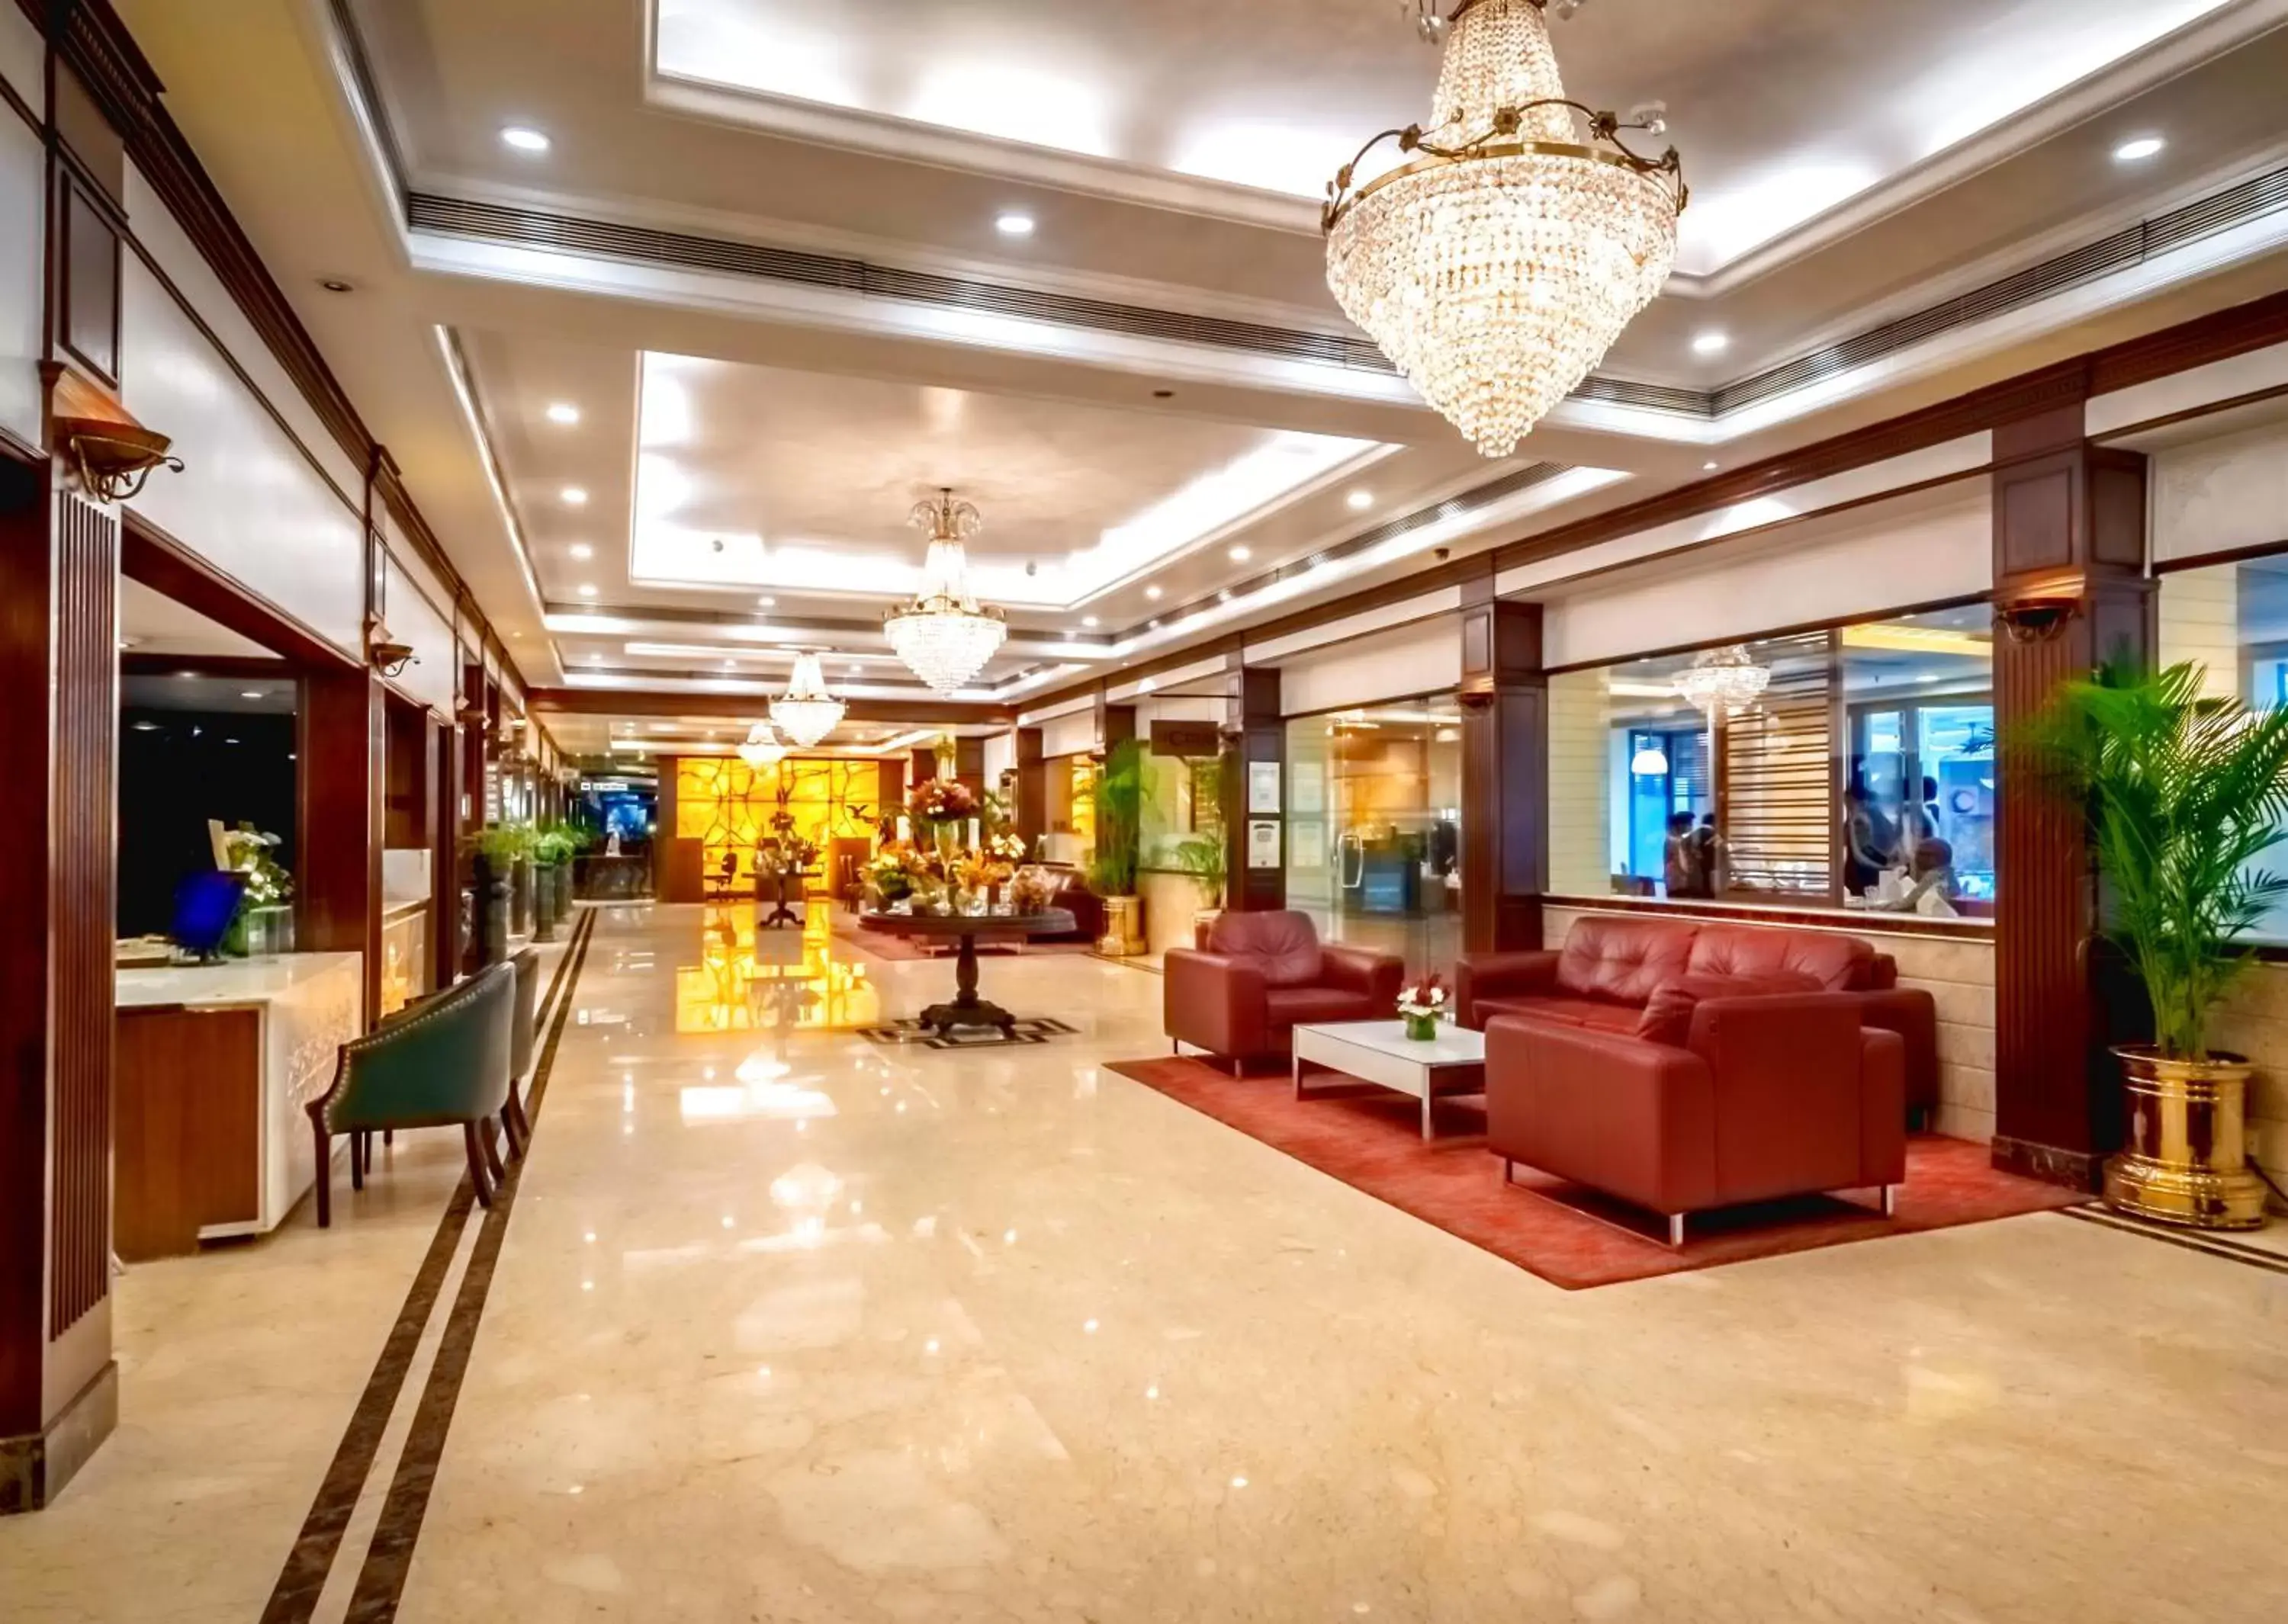 Lobby or reception, Lobby/Reception in Kenilworth Hotel, Kolkata